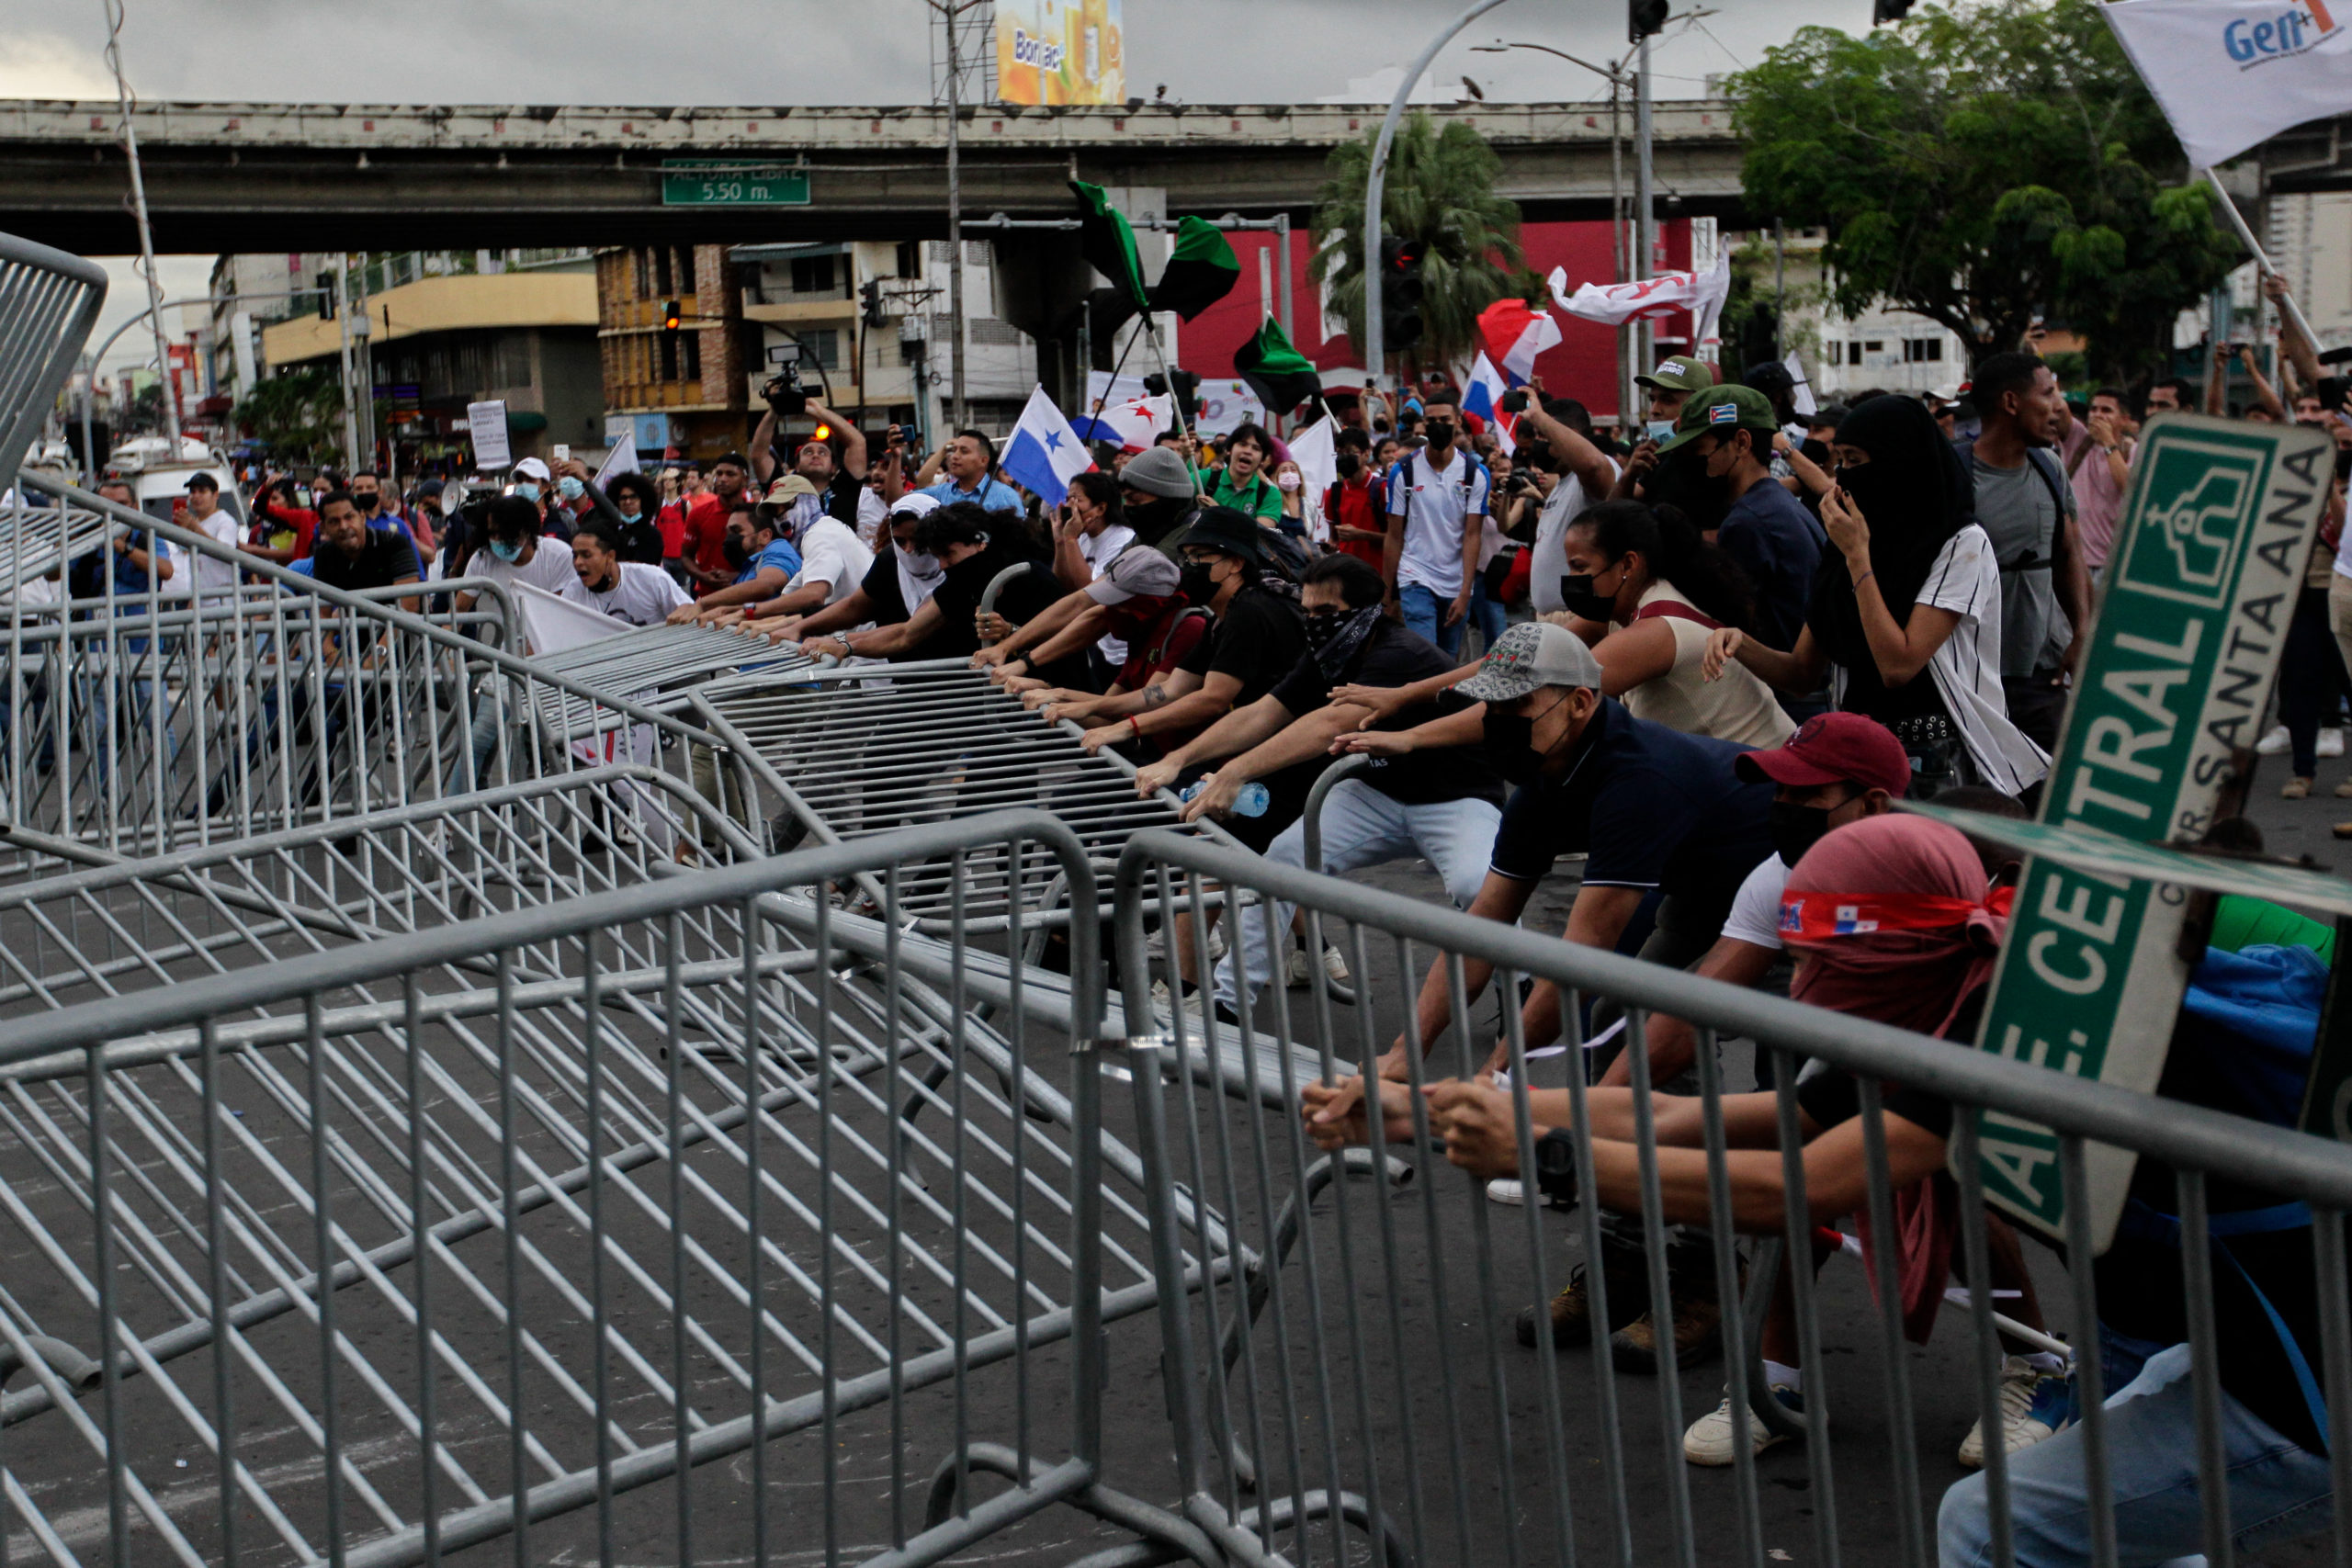 Παναμάς: Χιλιάδες διαδηλωτές στους δρόμους παρά την εξαγγελία για πάγωμα των τιμών